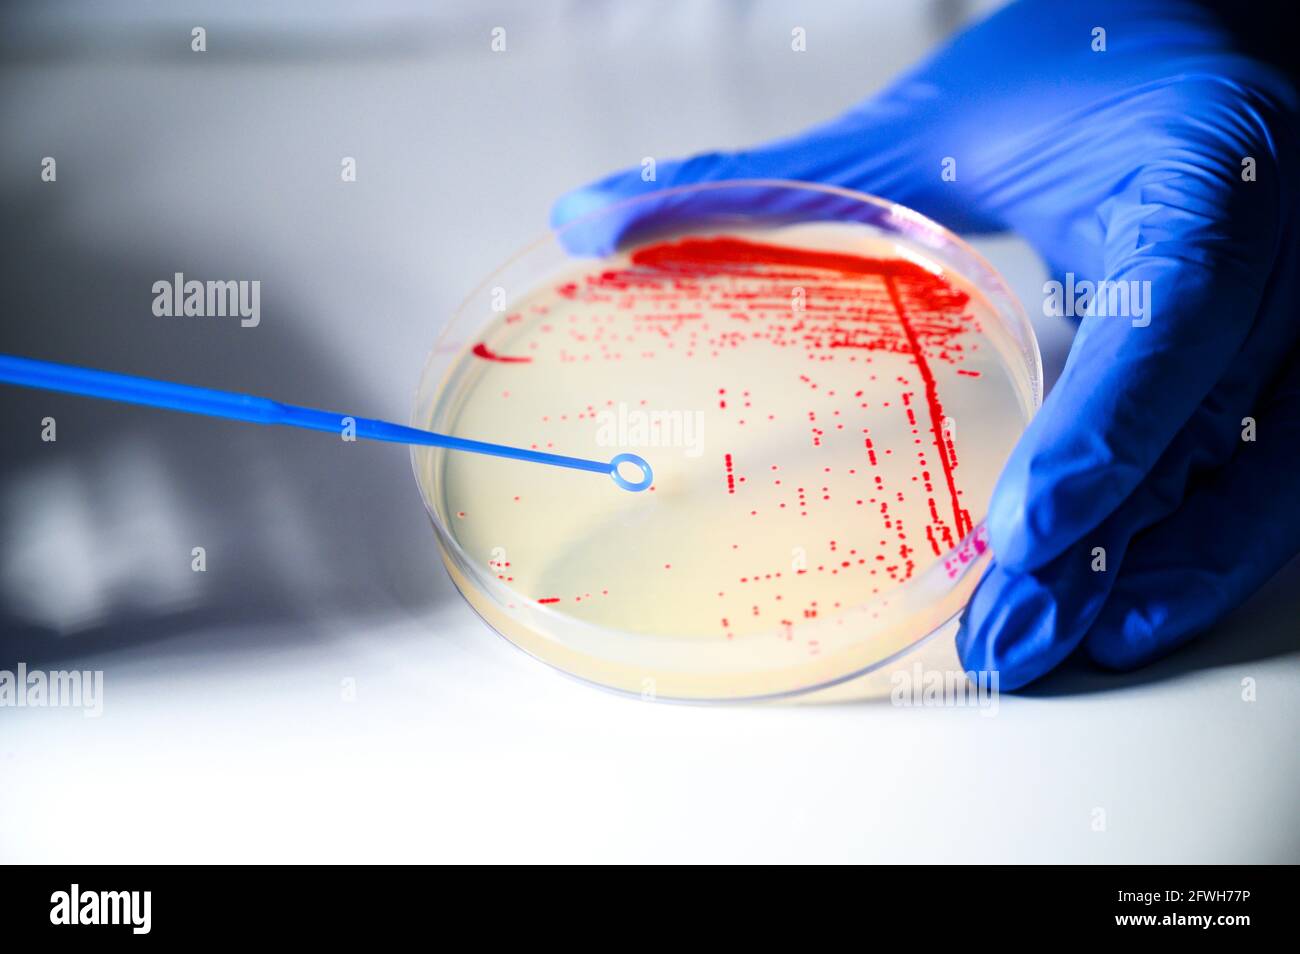 Reasercher nimmt Kolonie einer roten Bakterienkultur ab Agarplatte mit blauem Stick in einem molekularbiologischen Labor Für die Isolierung des Medikaments r Stockfoto